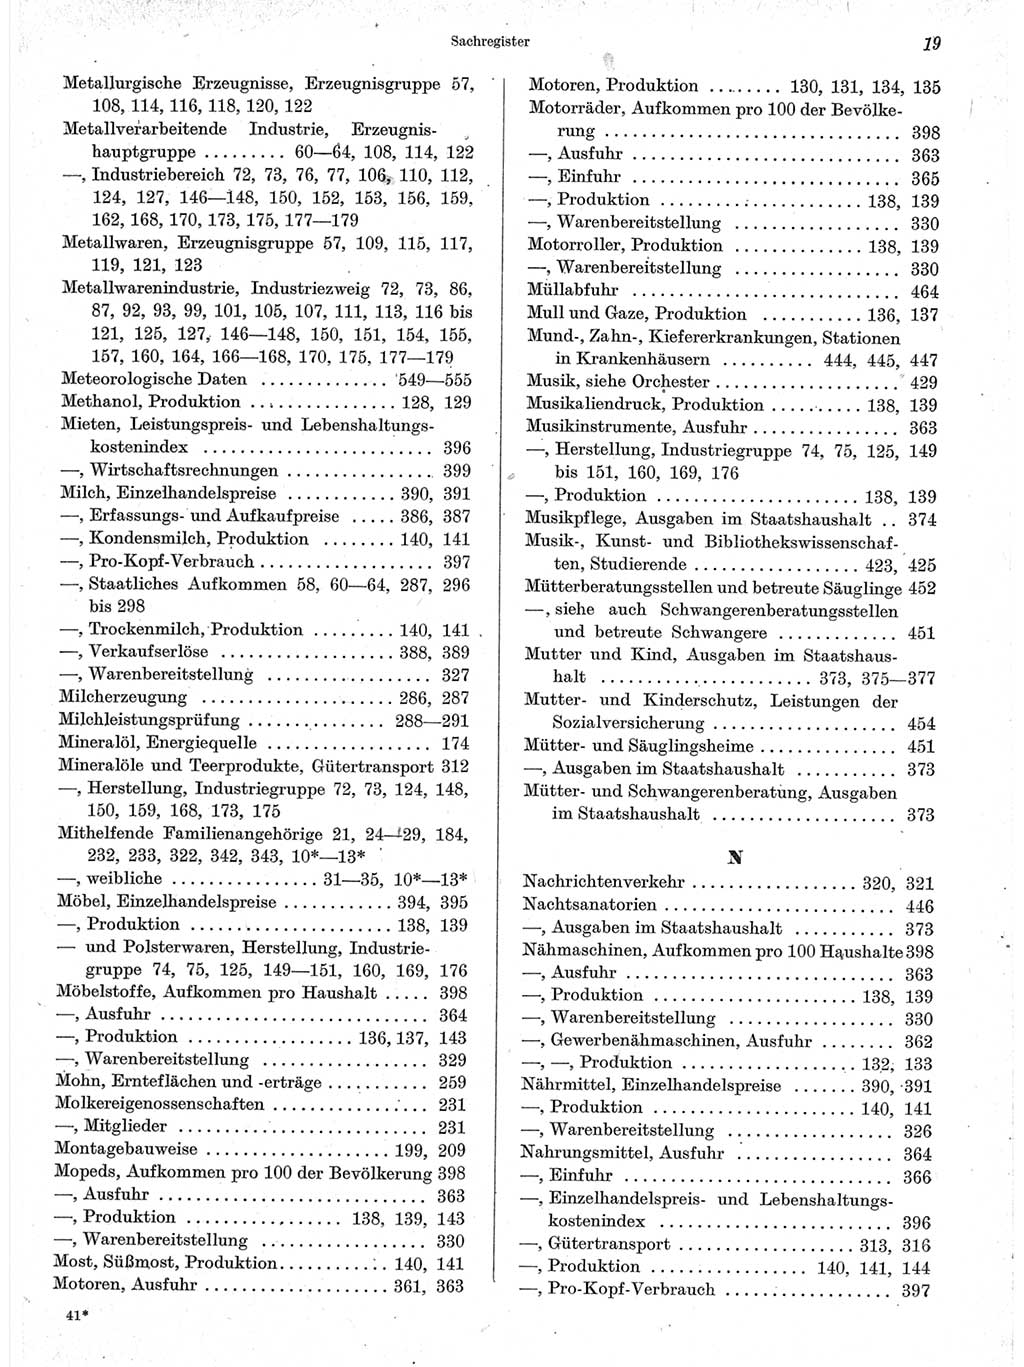 Statistisches Jahrbuch der Deutschen Demokratischen Republik (DDR) 1963, Seite 19 (Stat. Jb. DDR 1963, S. 19)